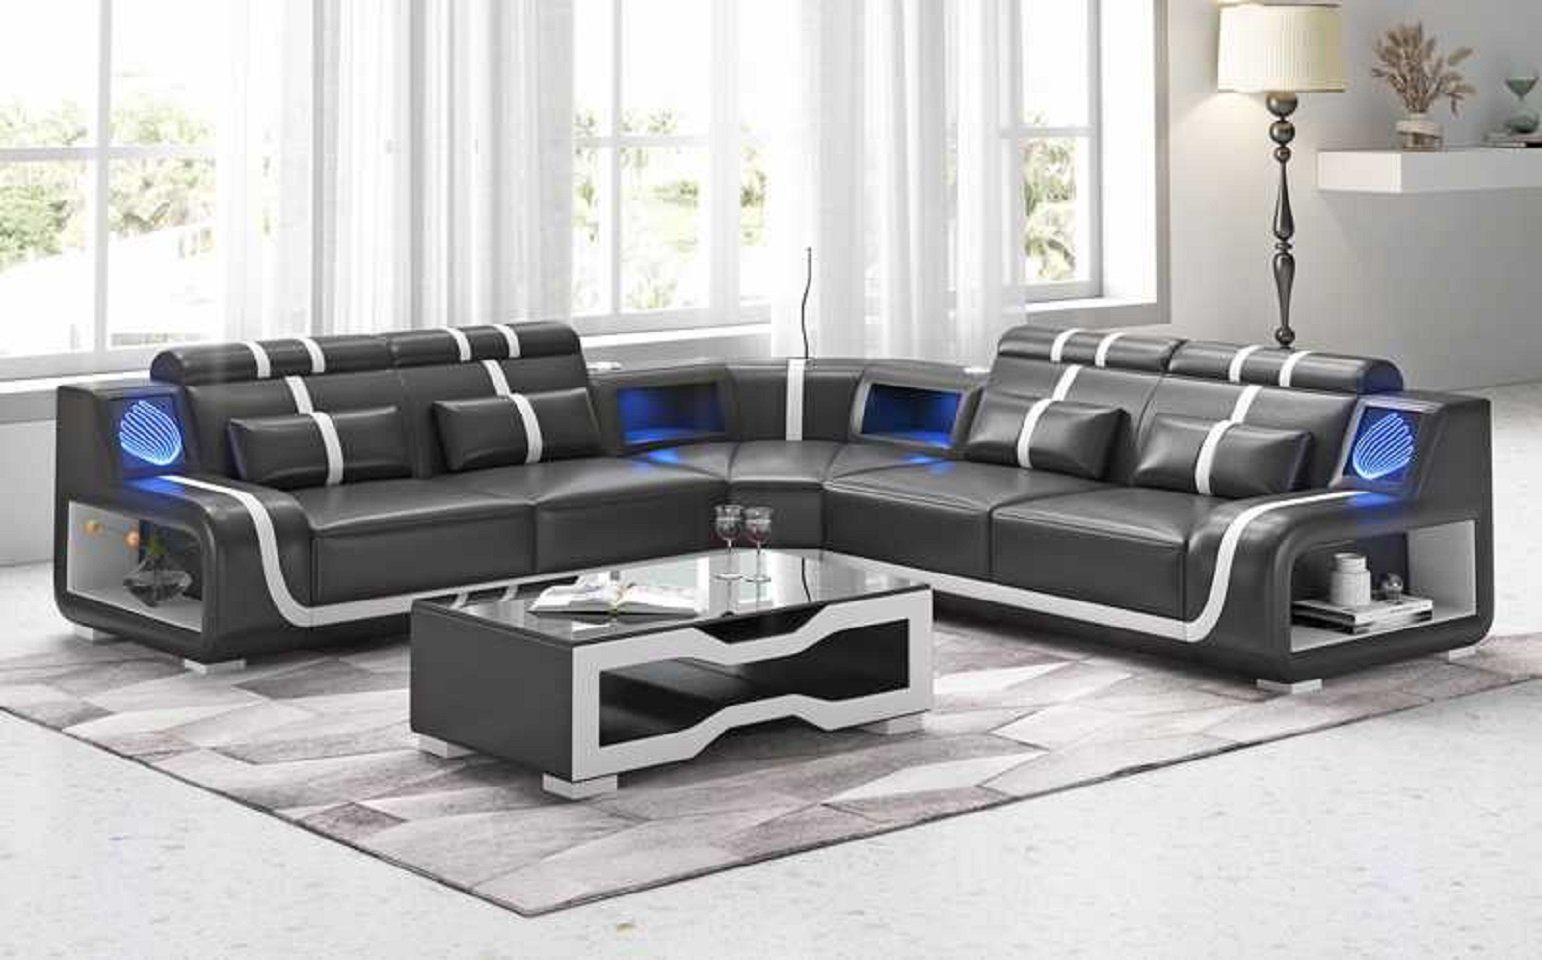 JVmoebel Ecksofa Luxus Couch Ecksofa L Form Modern Kunstleder couchen Sofa Sofas, 3 Teile, Made in Europe Schwarz